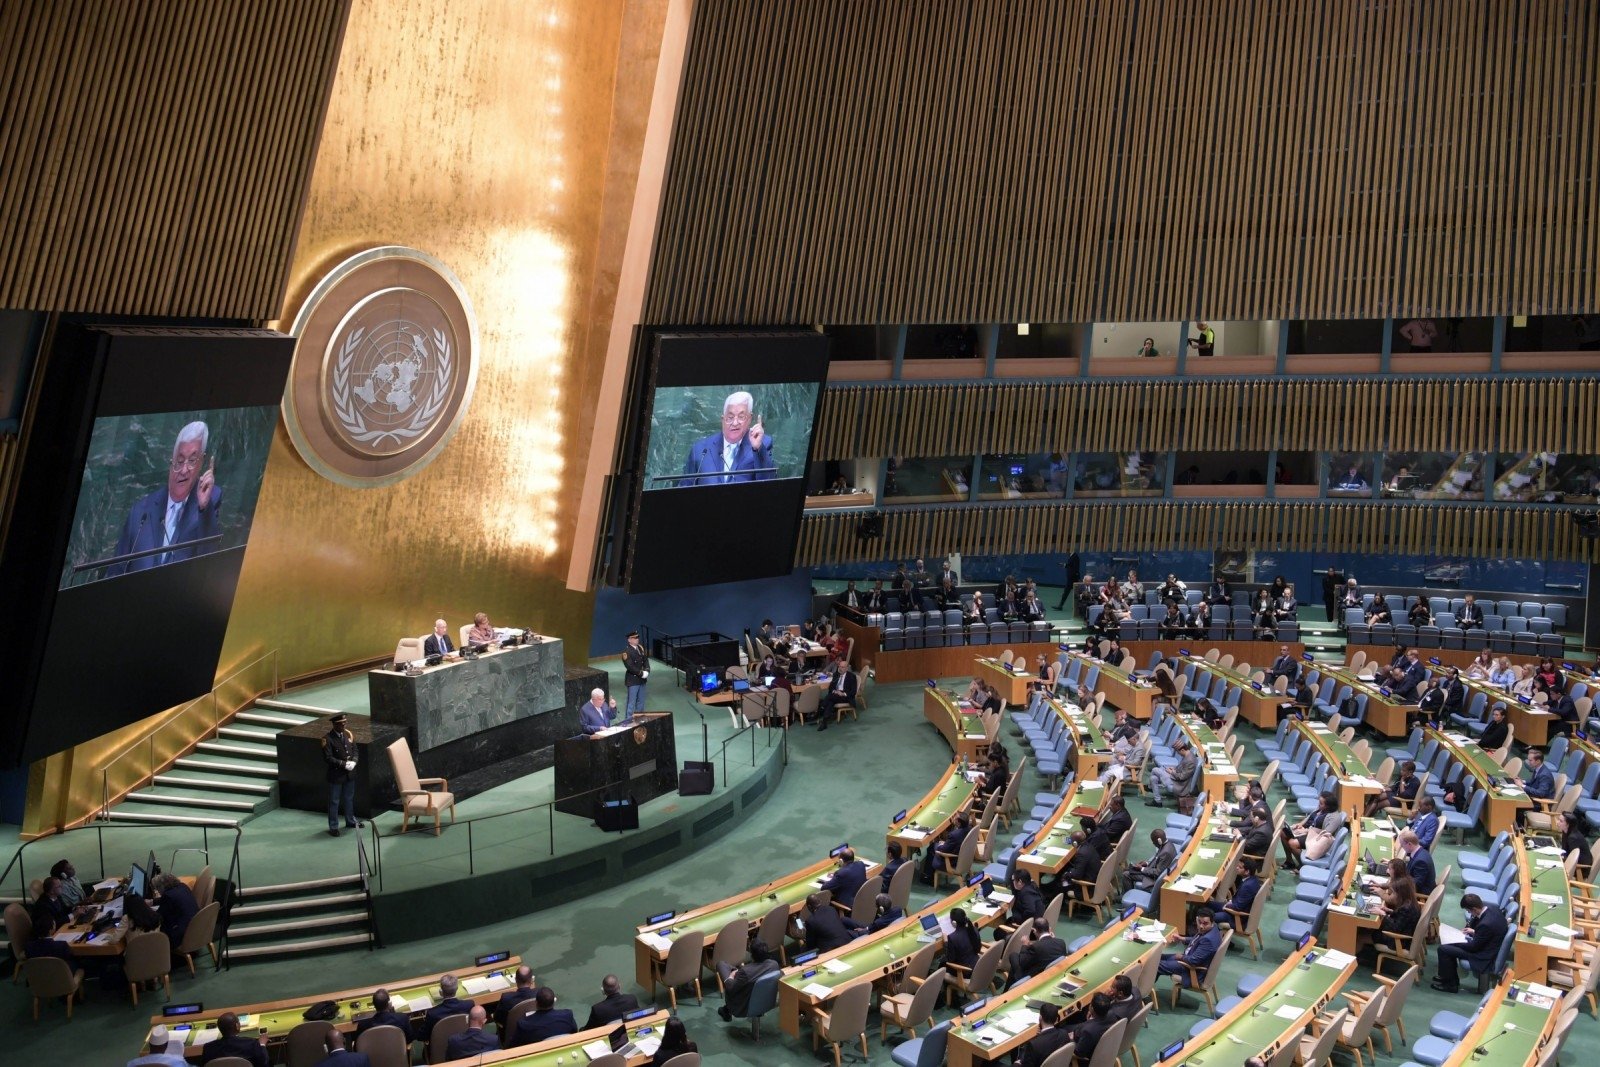 Зал оон. Генеральная Ассамблея ООН 2018. Зал Генеральной Ассамблеи ООН. Генассамблея ООН 2022 по Украине. Генассамблеи ООН 2022.